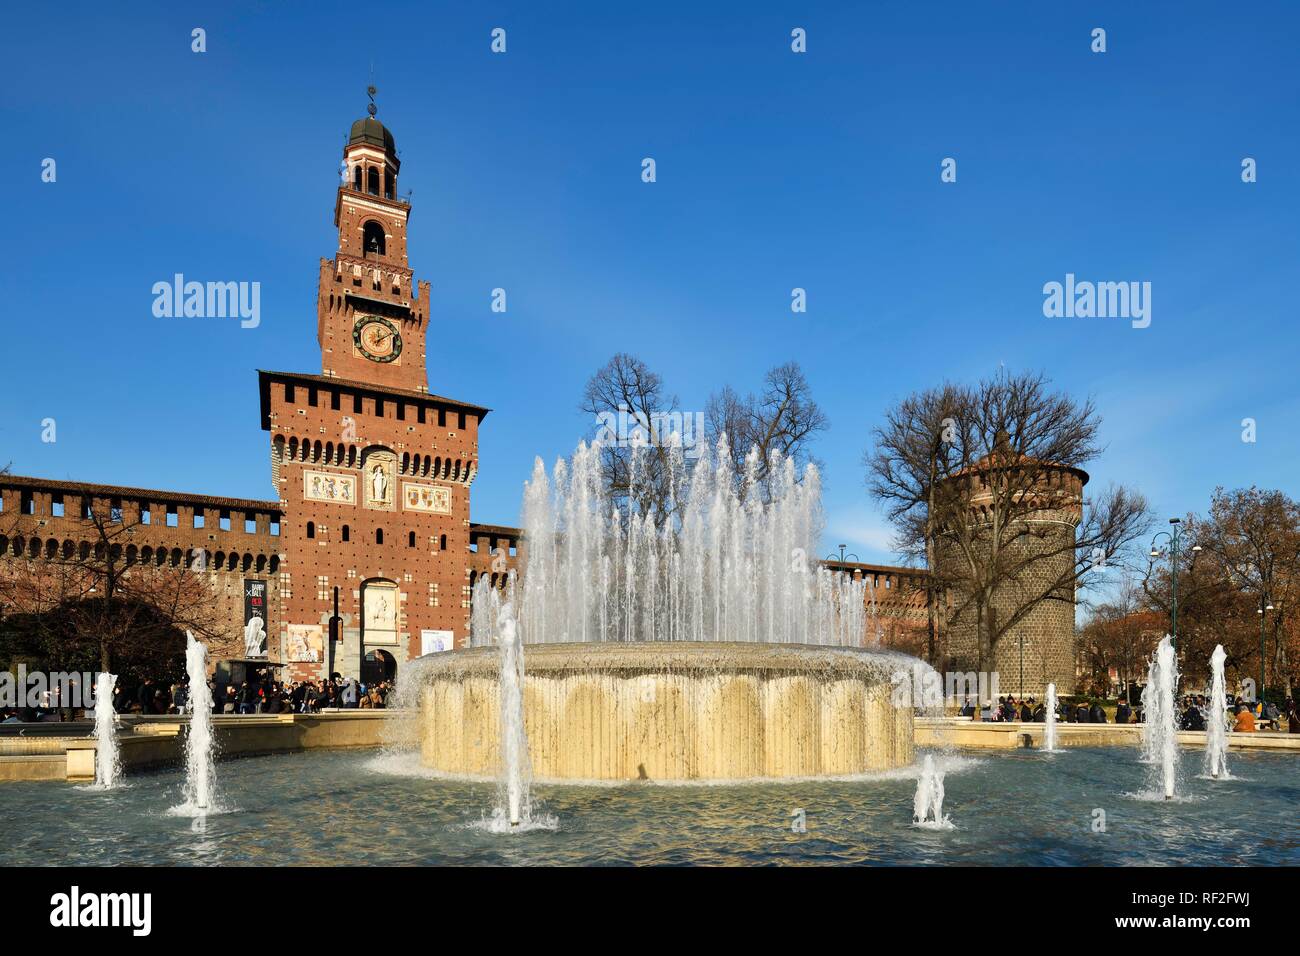 Fountain with the Castello Sforzesco, Sforza Castle, Milan, Lombardy, Italy Stock Photo